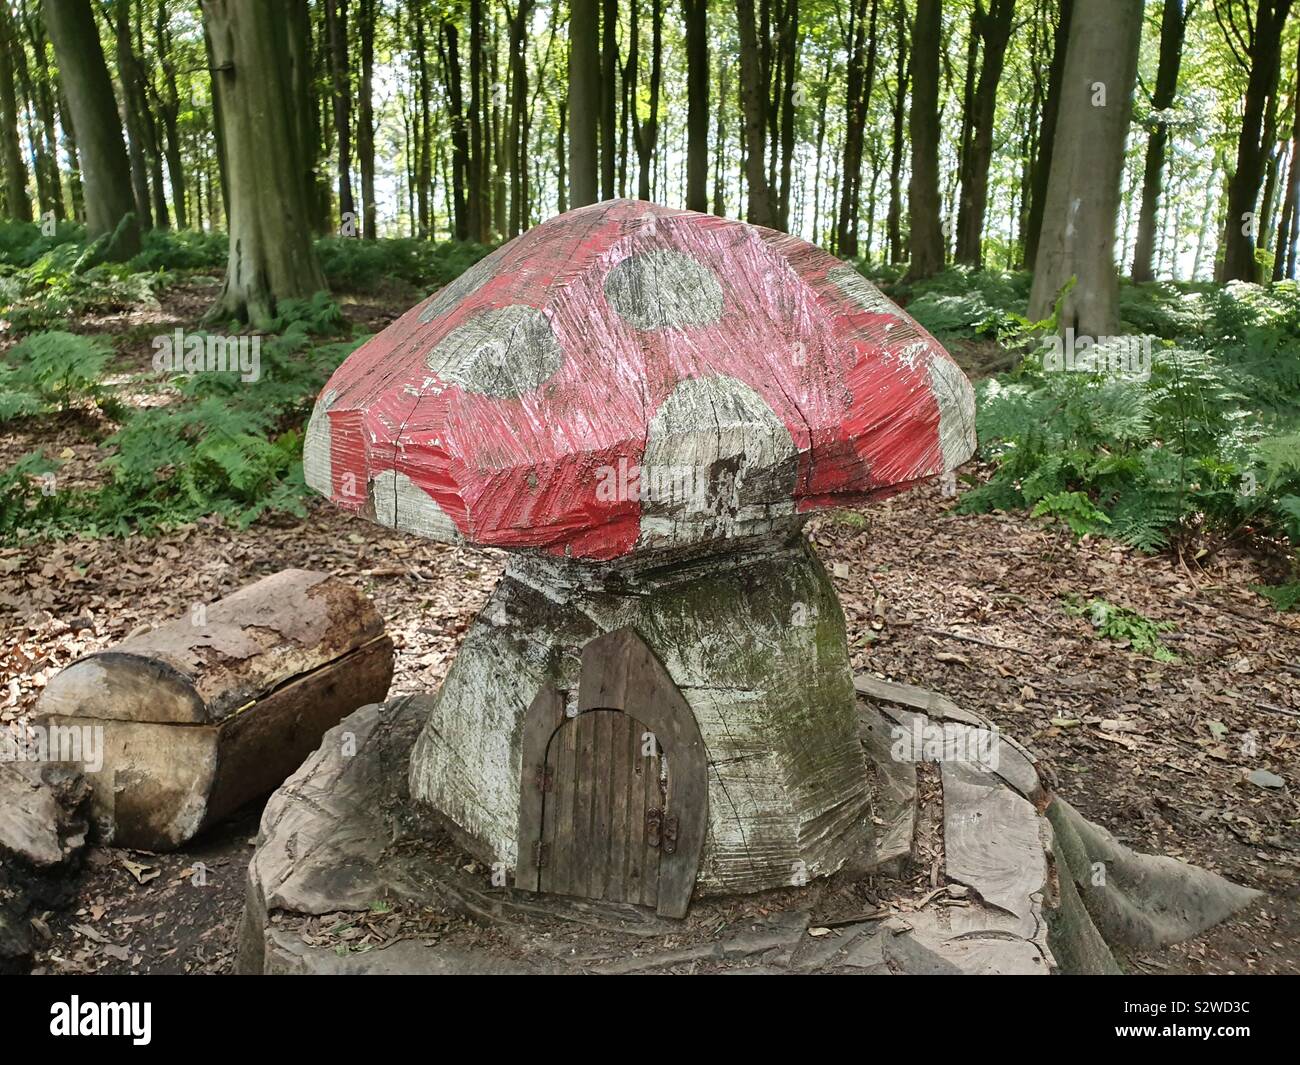 Wooden mushroom in the woods with fairy door Stock Photo